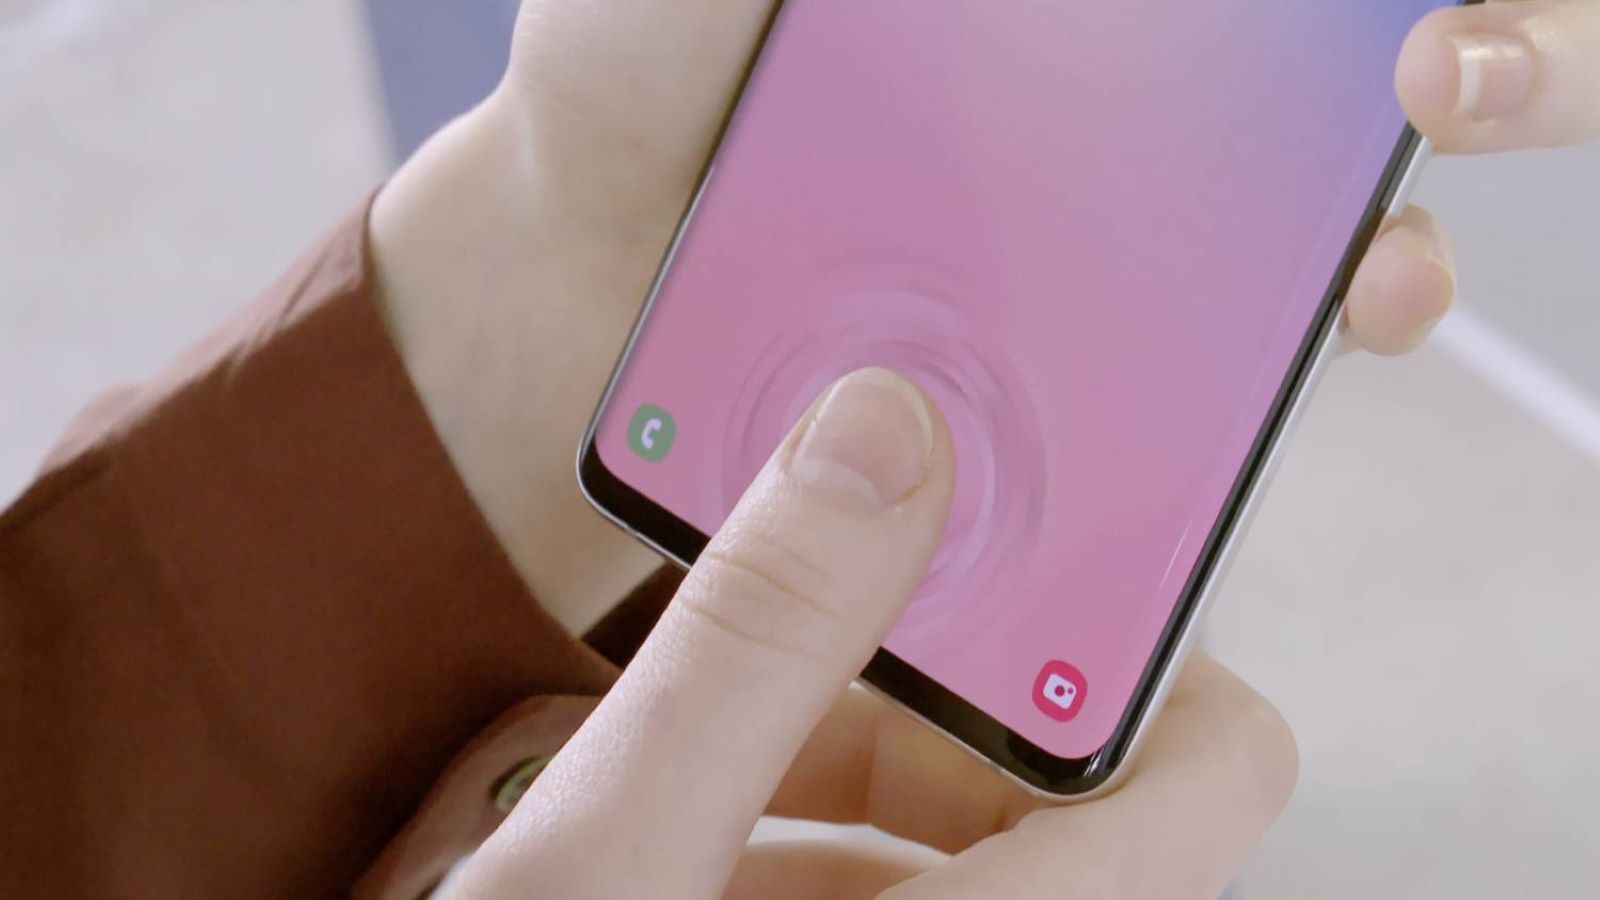 Le Galaxy S10 est l’un des meilleurs mobiles du moment. Comme beaucoup de smartphones, ses systèmes de déverrouillage par reconnaissance faciale et empreinte digitale sont faciles à berner. © Samsung Electronics